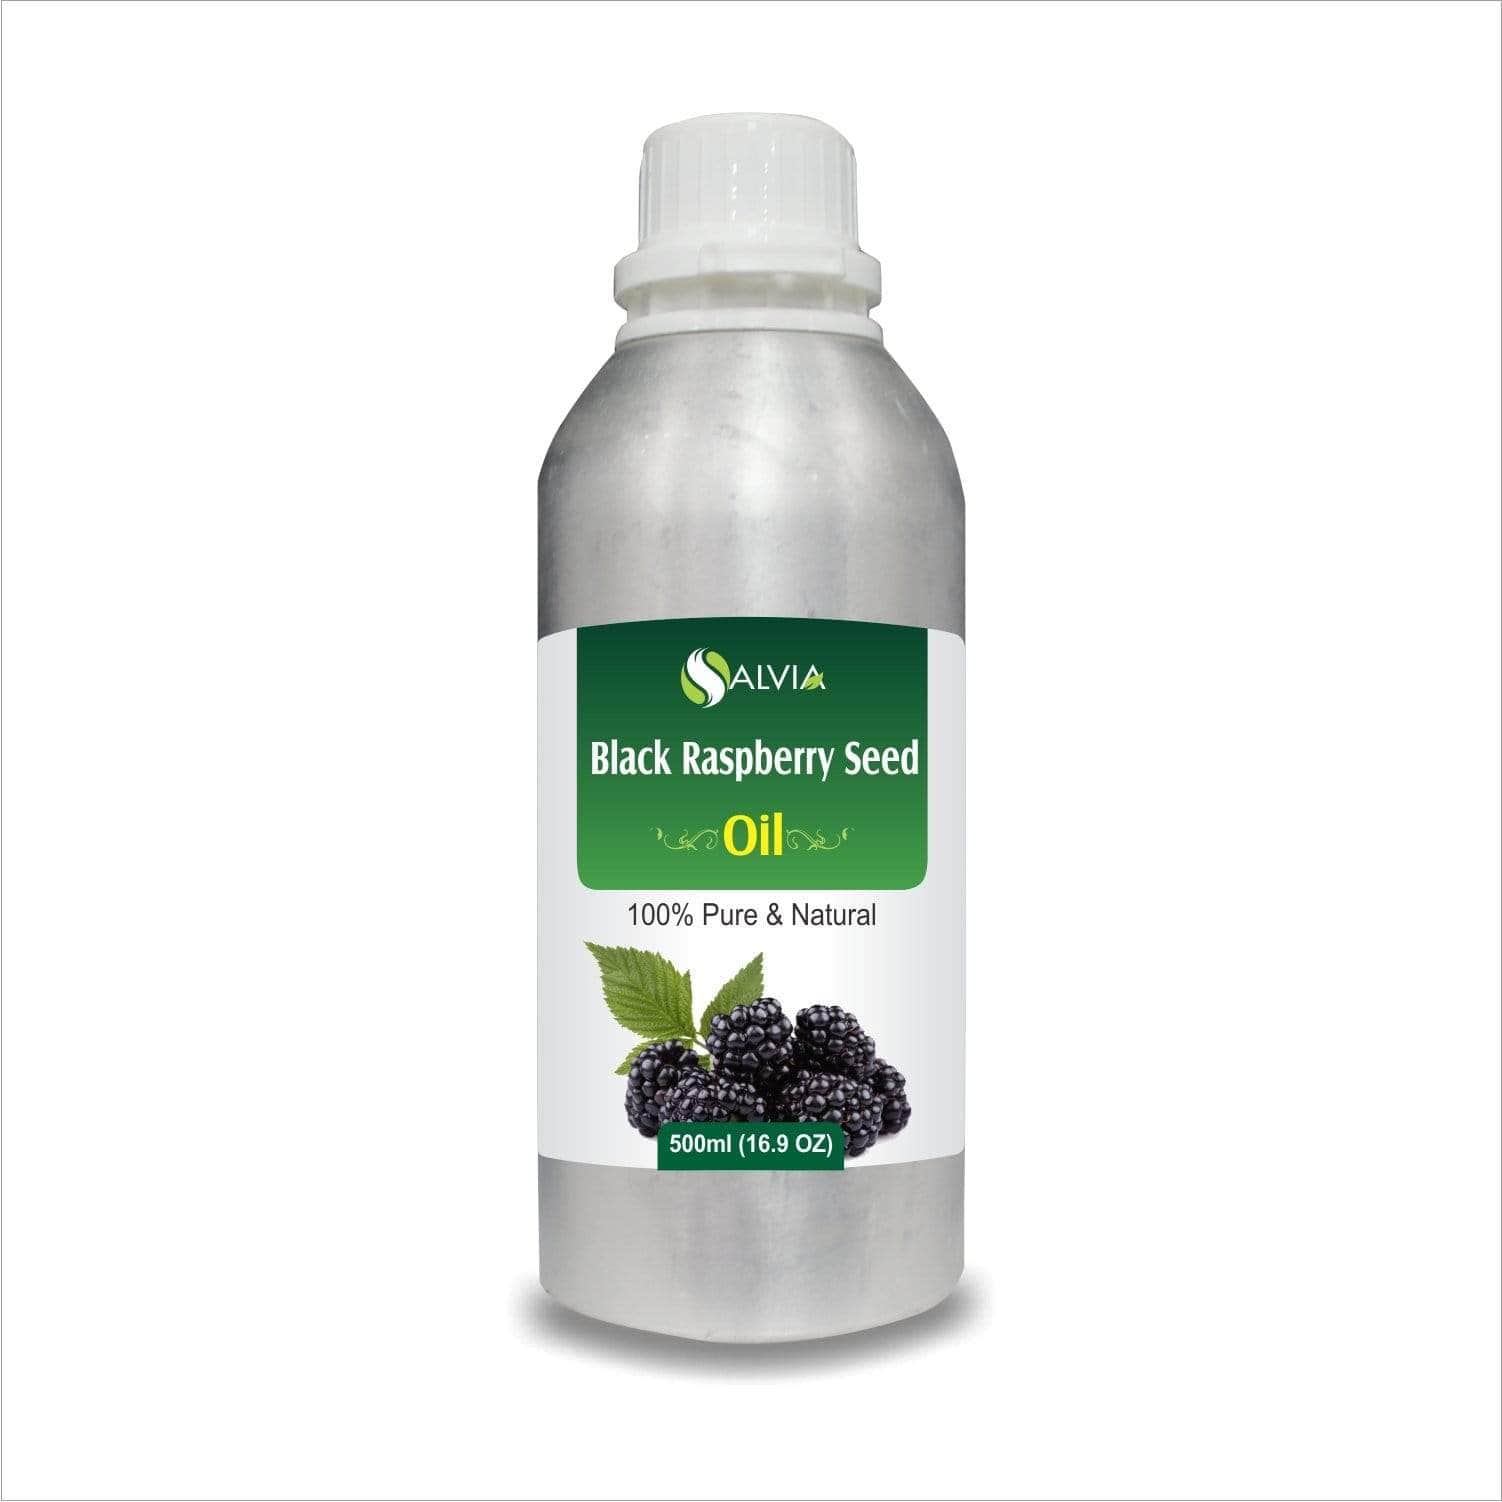 black raspberry seed oil skin benefits